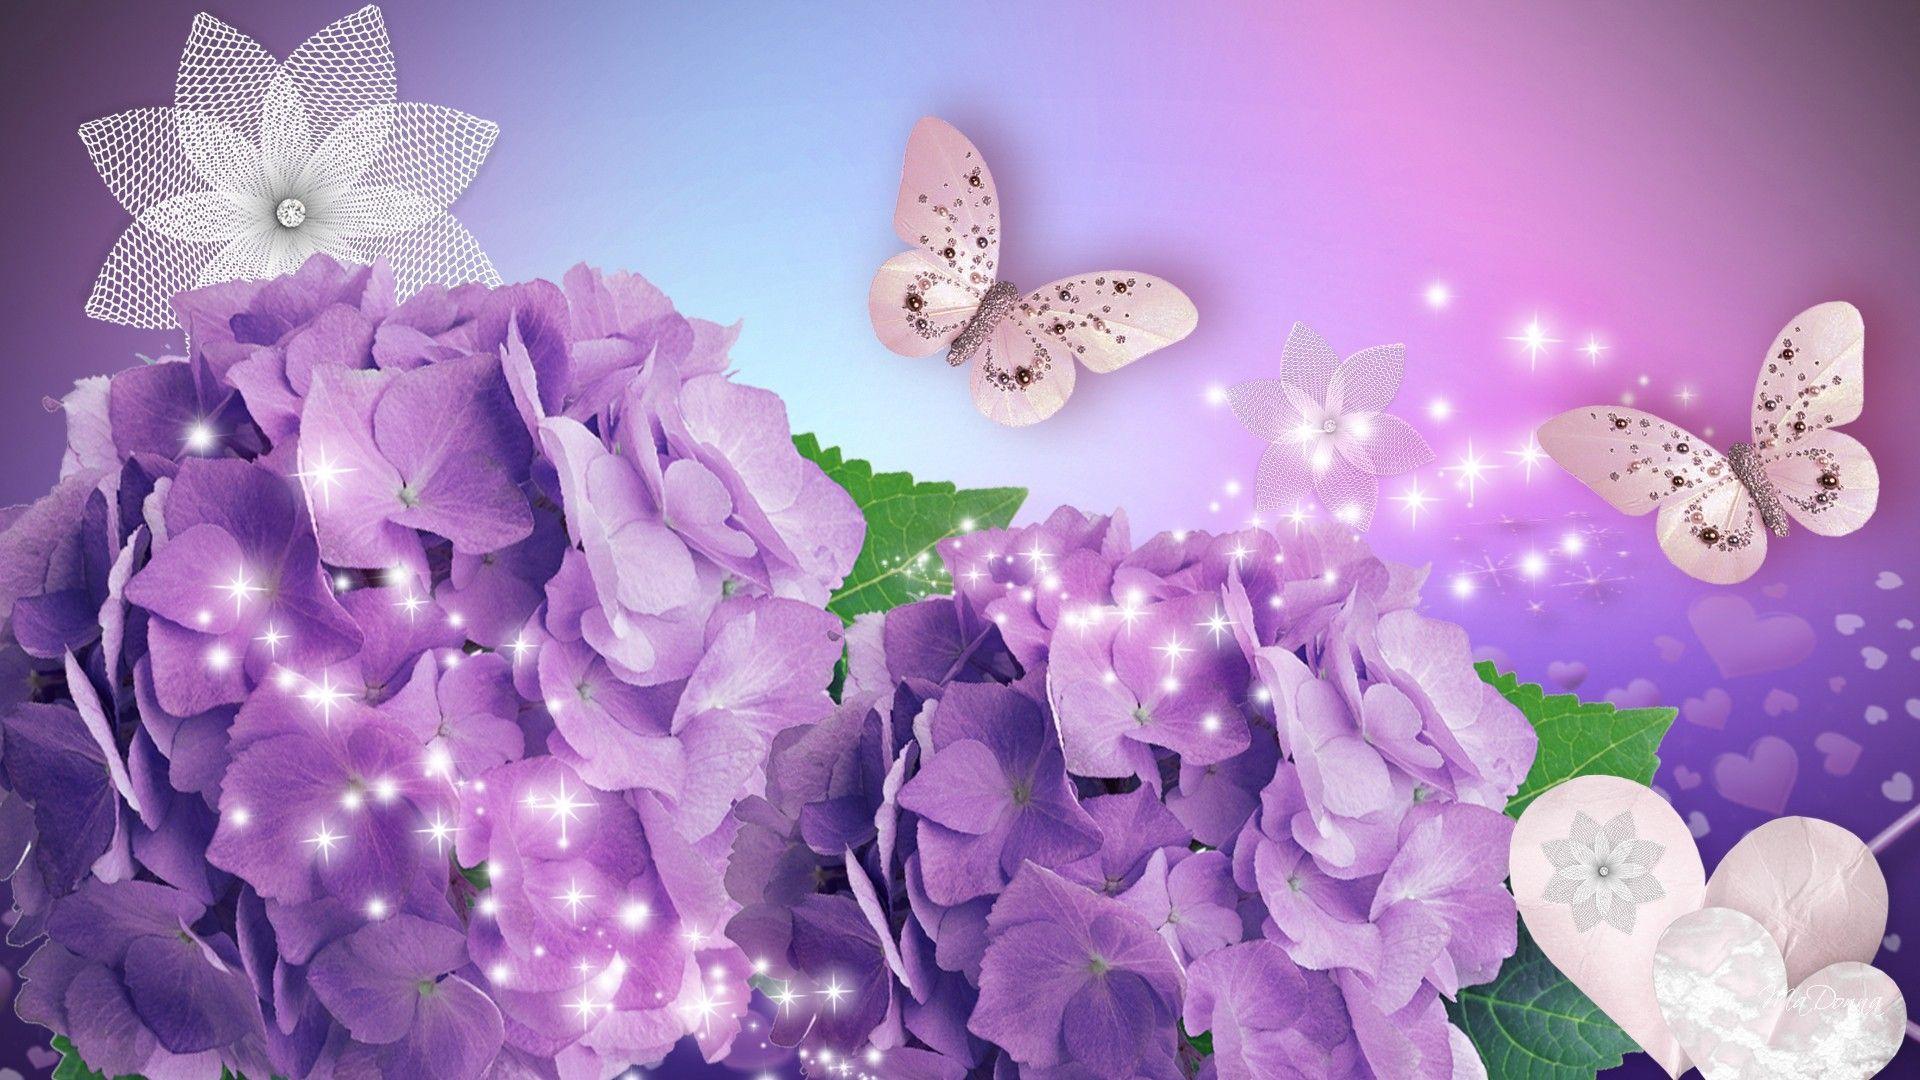 Hydrangea Flower Desktop Wallpaper Download